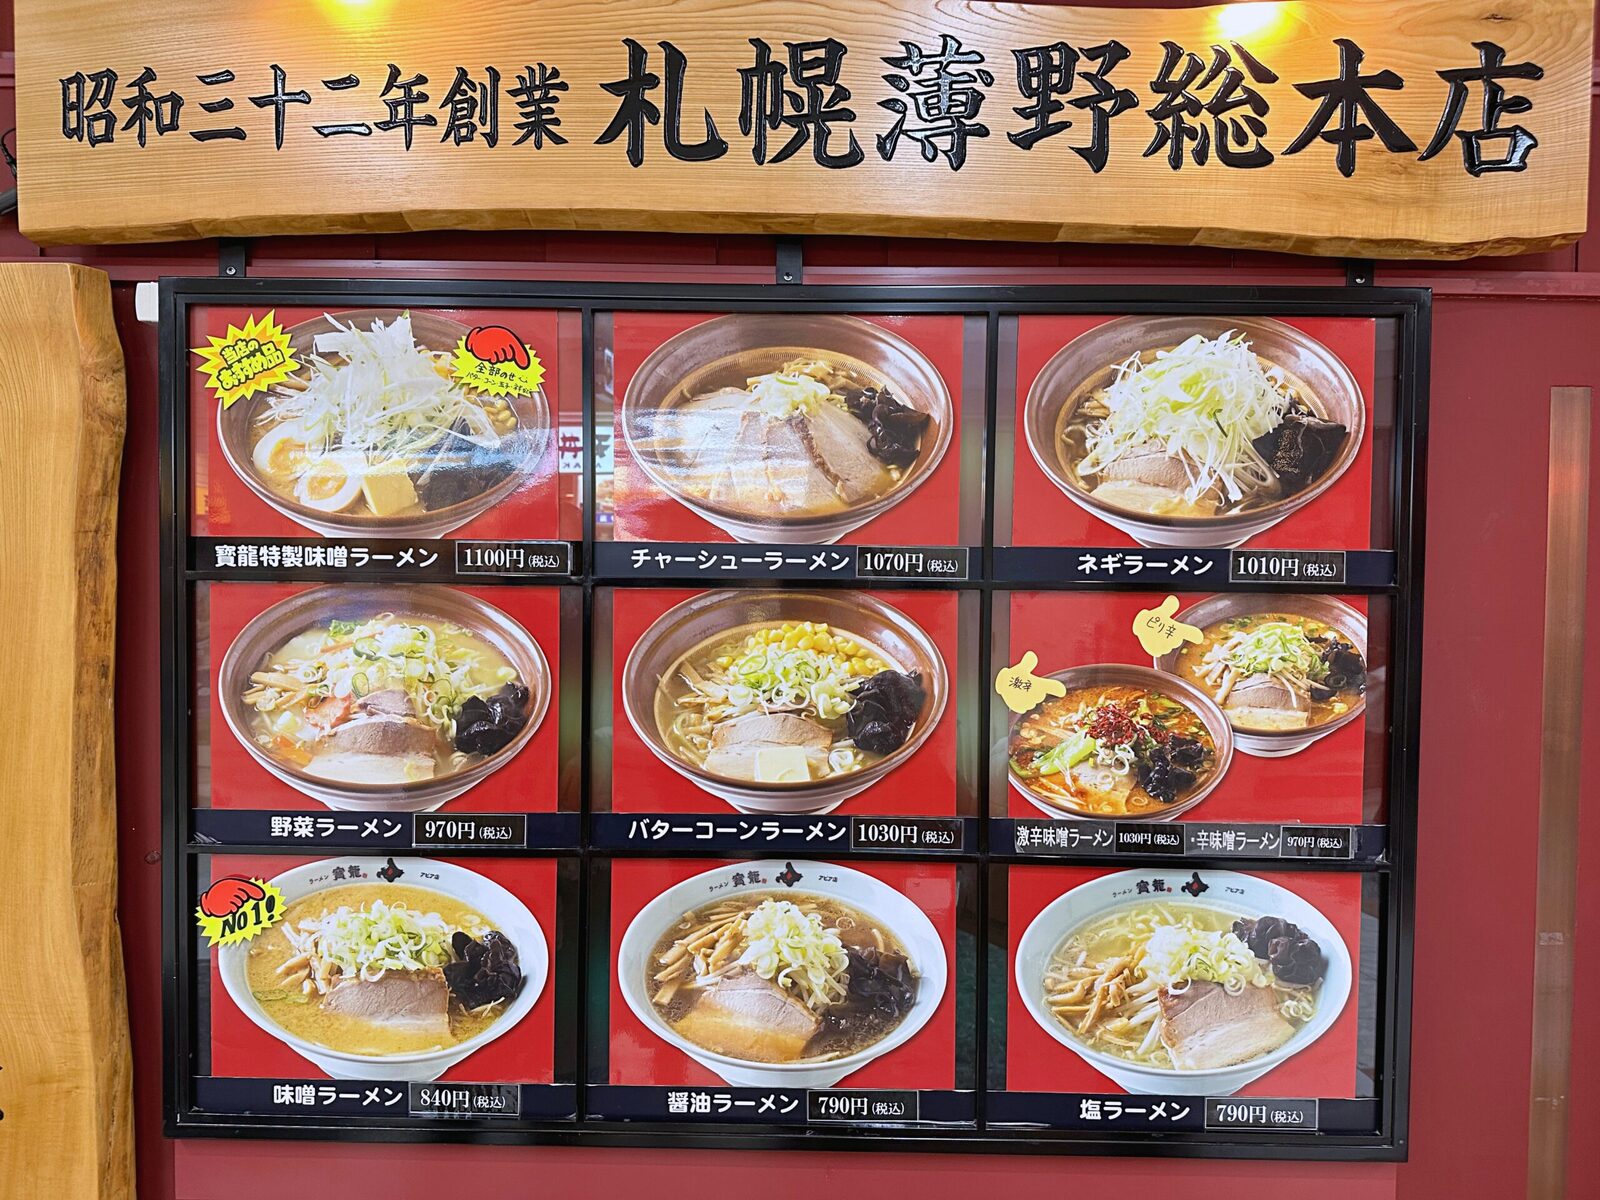 寶龍拉麵 北海道札幌必吃味噌拉麵，米其林指南推薦開業一甲子阿嬤下麵給你吃